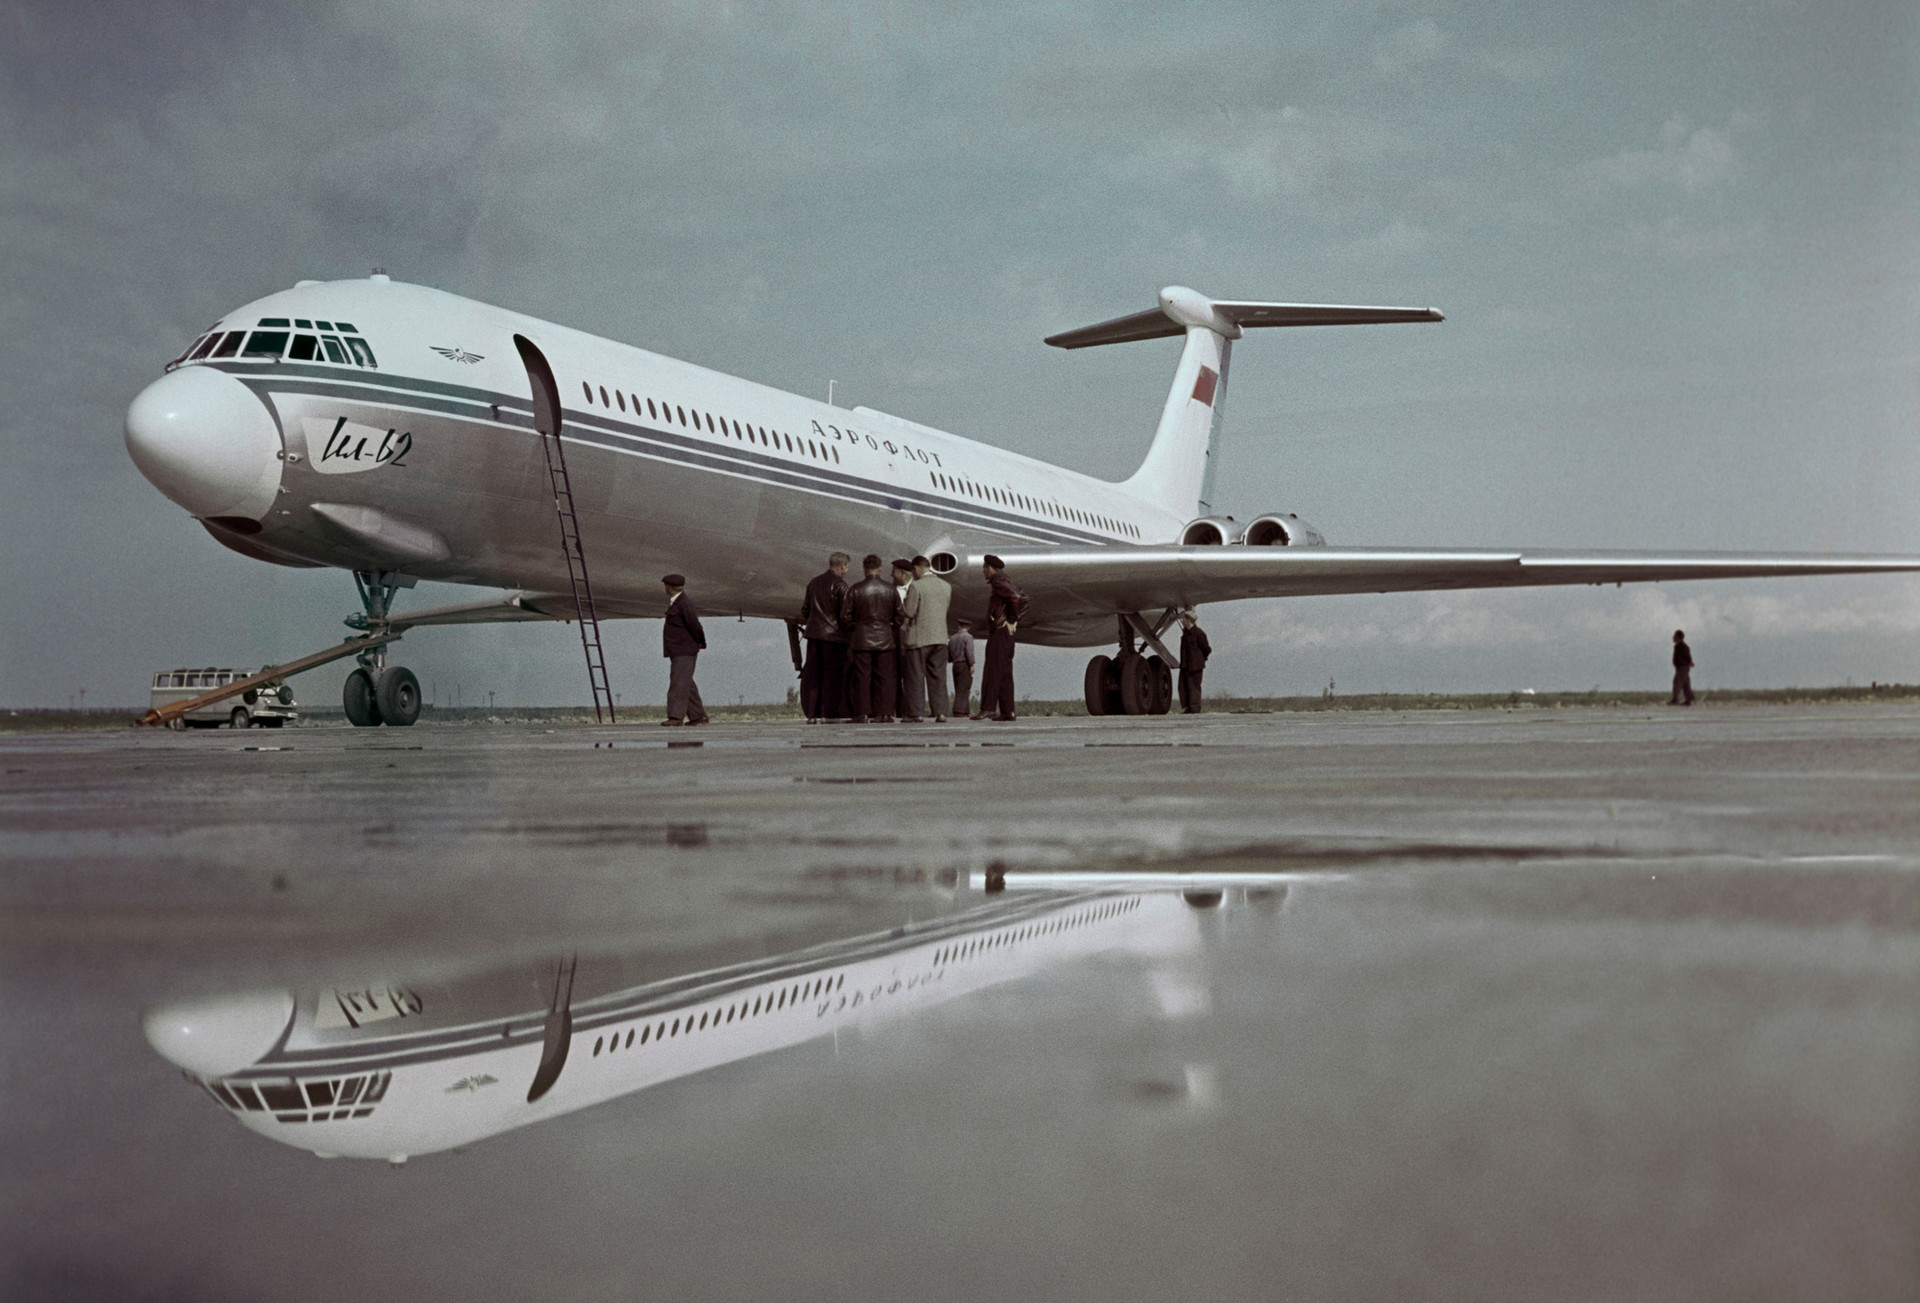 ソ連初の大陸間のジェット旅客機、アエロフロート社のIl-62。ヴヌコヴォ空港にて。